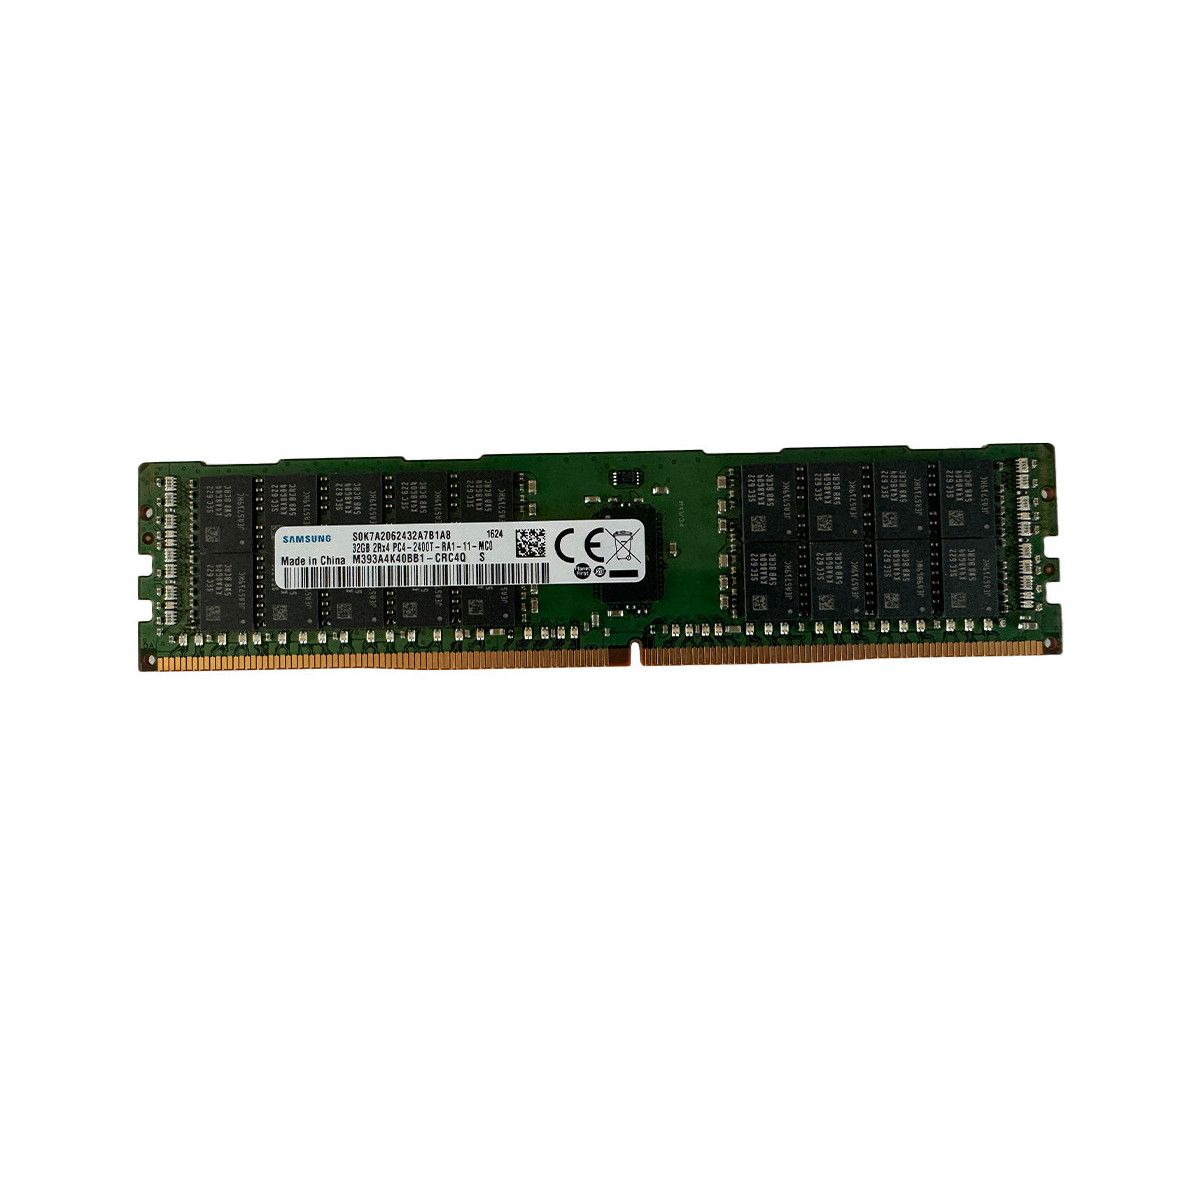 SNPCPC7GC/32G-MS - Memstar 1x 32GB DDR4-2400 RDIMM PC4-19200T-R - Mem-Star compatibel OEM geheugen 1 - Memstar 